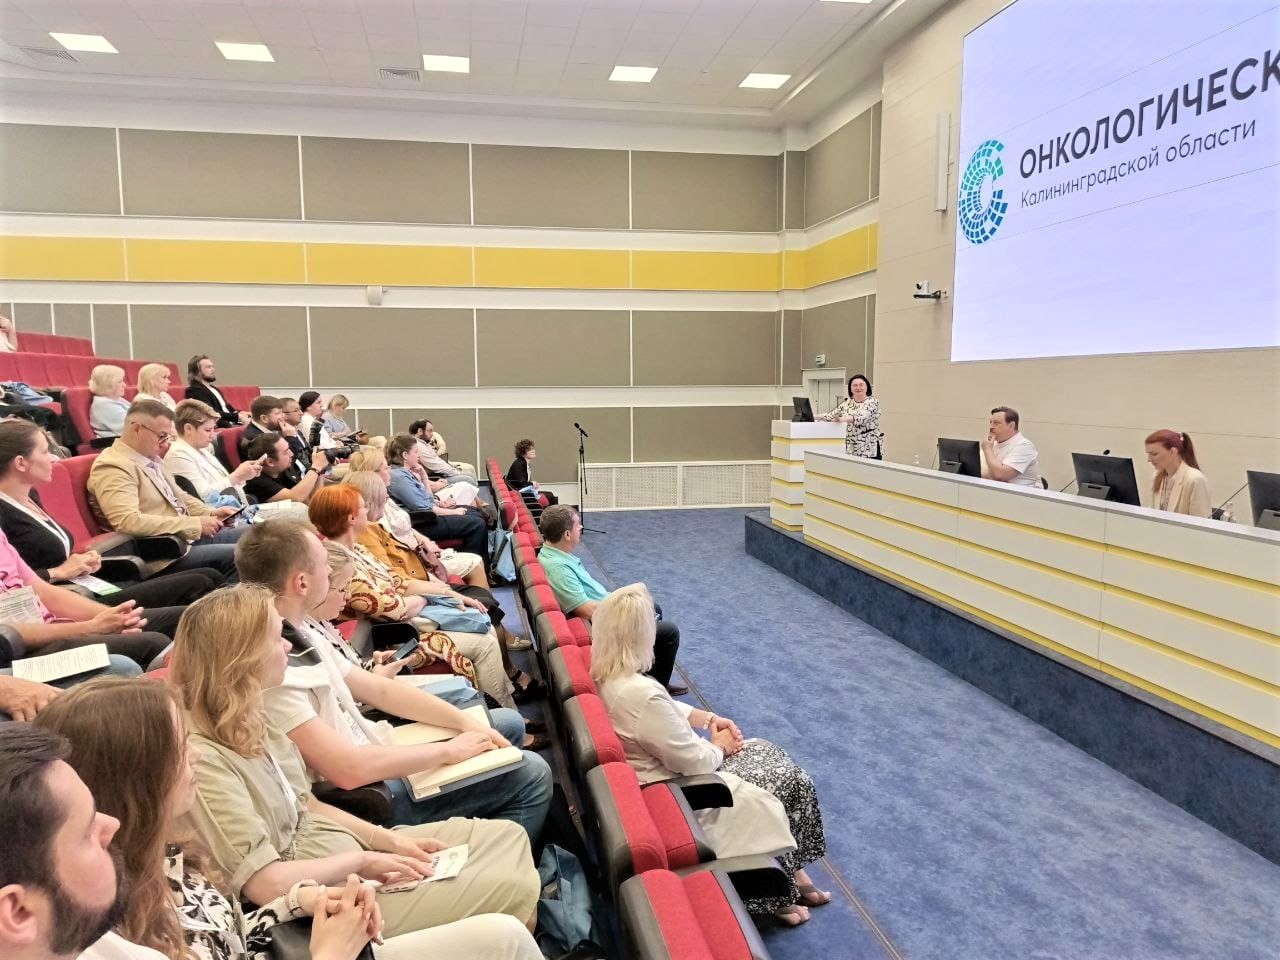 Третий научно-практический съезд онкологов в Калининградской области